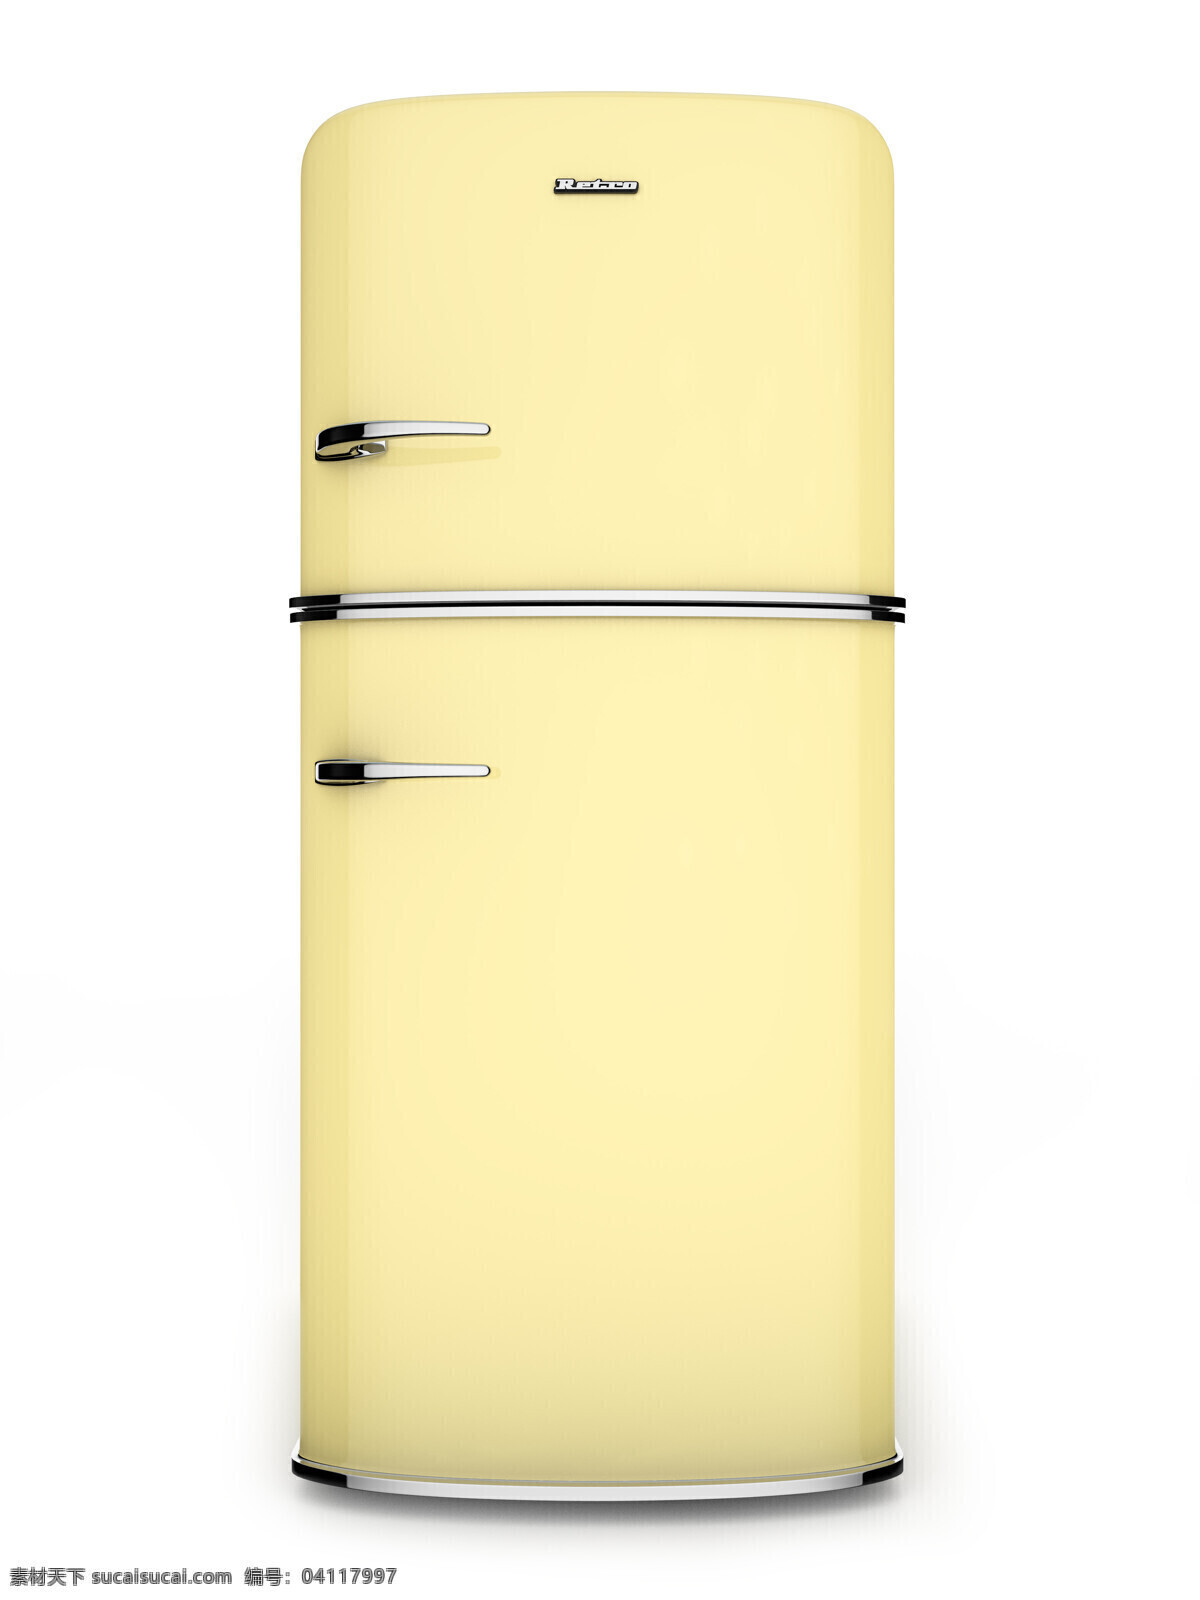 冰柜 电冰箱 冰箱 家用电器 家电 家具 家具电器 生活百科